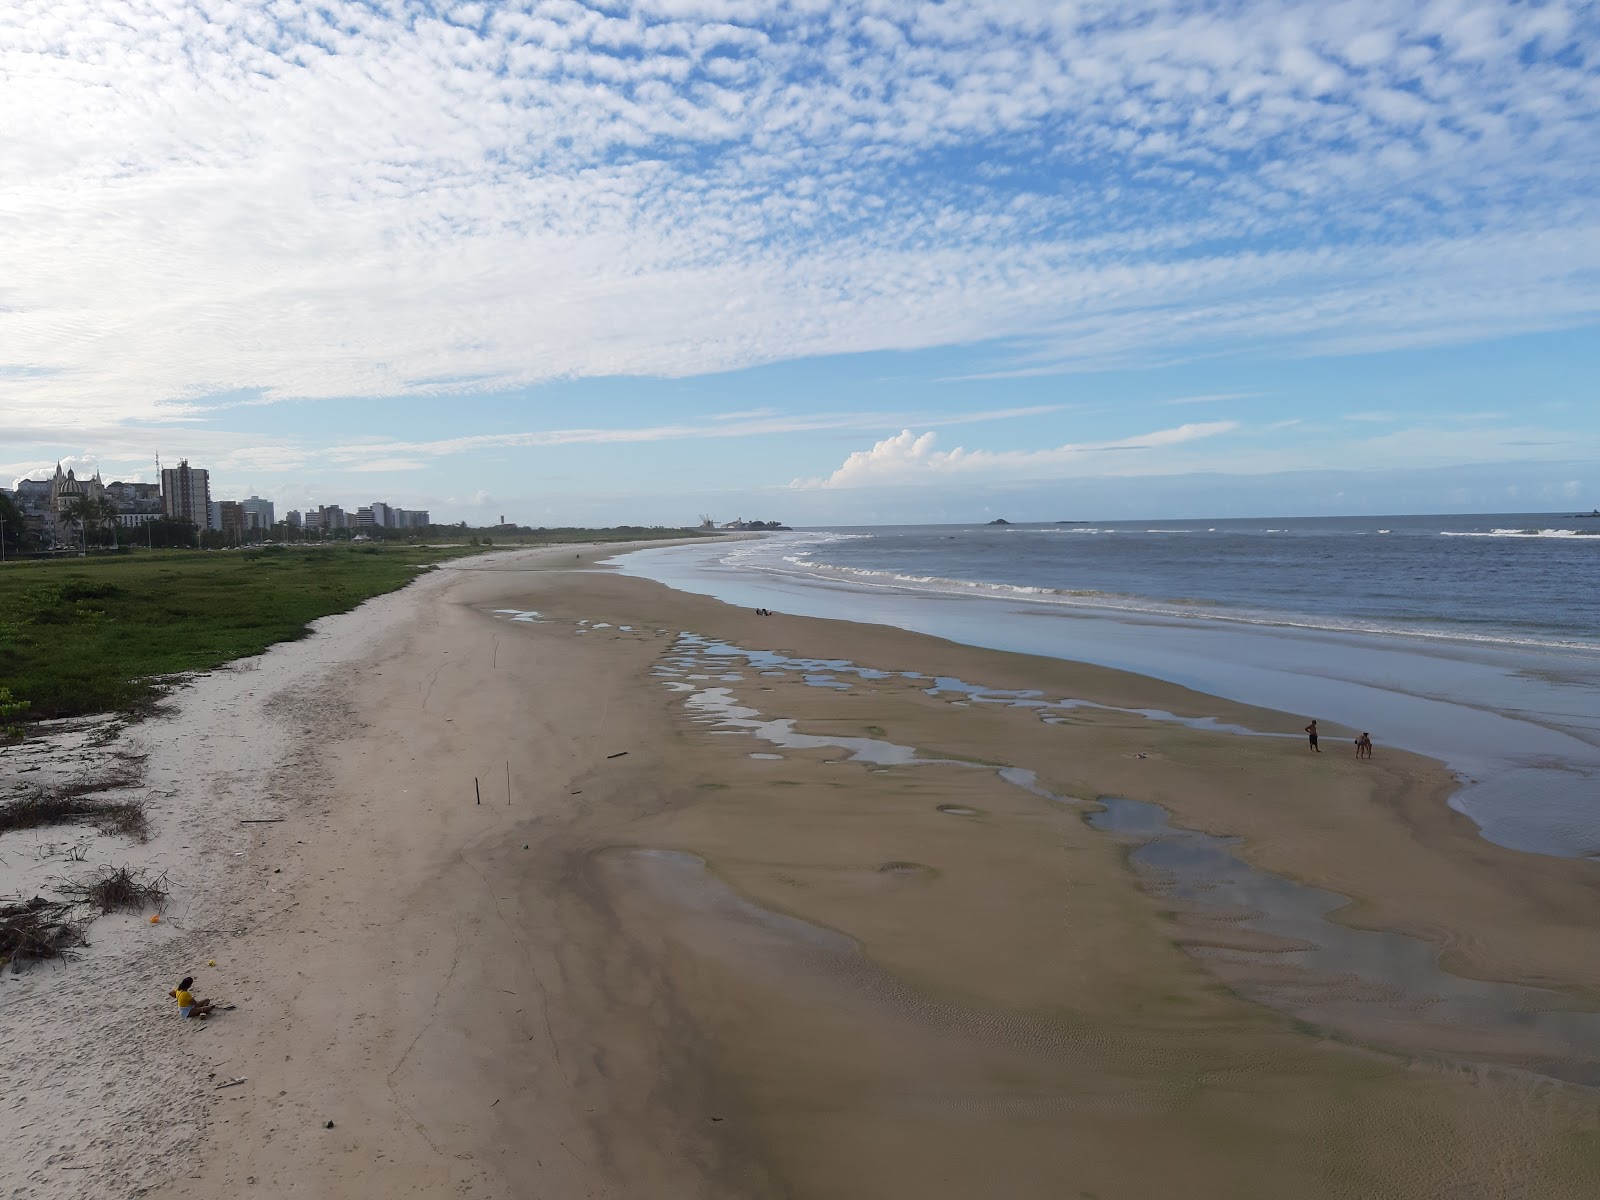 Zdjęcie Praia da Avenida - popularne miejsce wśród znawców relaksu